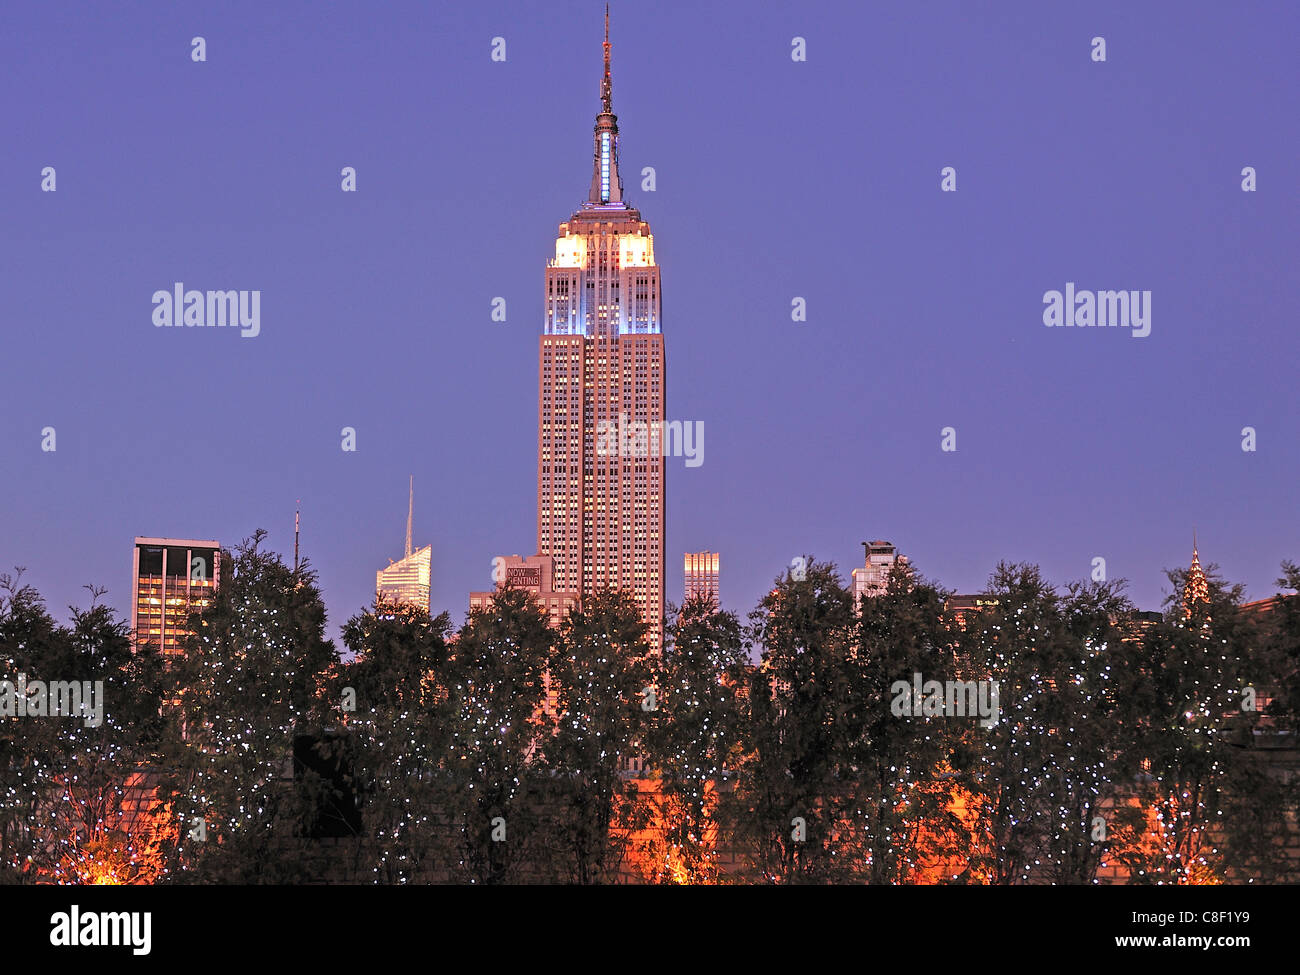 Noël, décoration, Empire State Building, Manhattan, New York, USA, United States, Amérique, nuit Banque D'Images